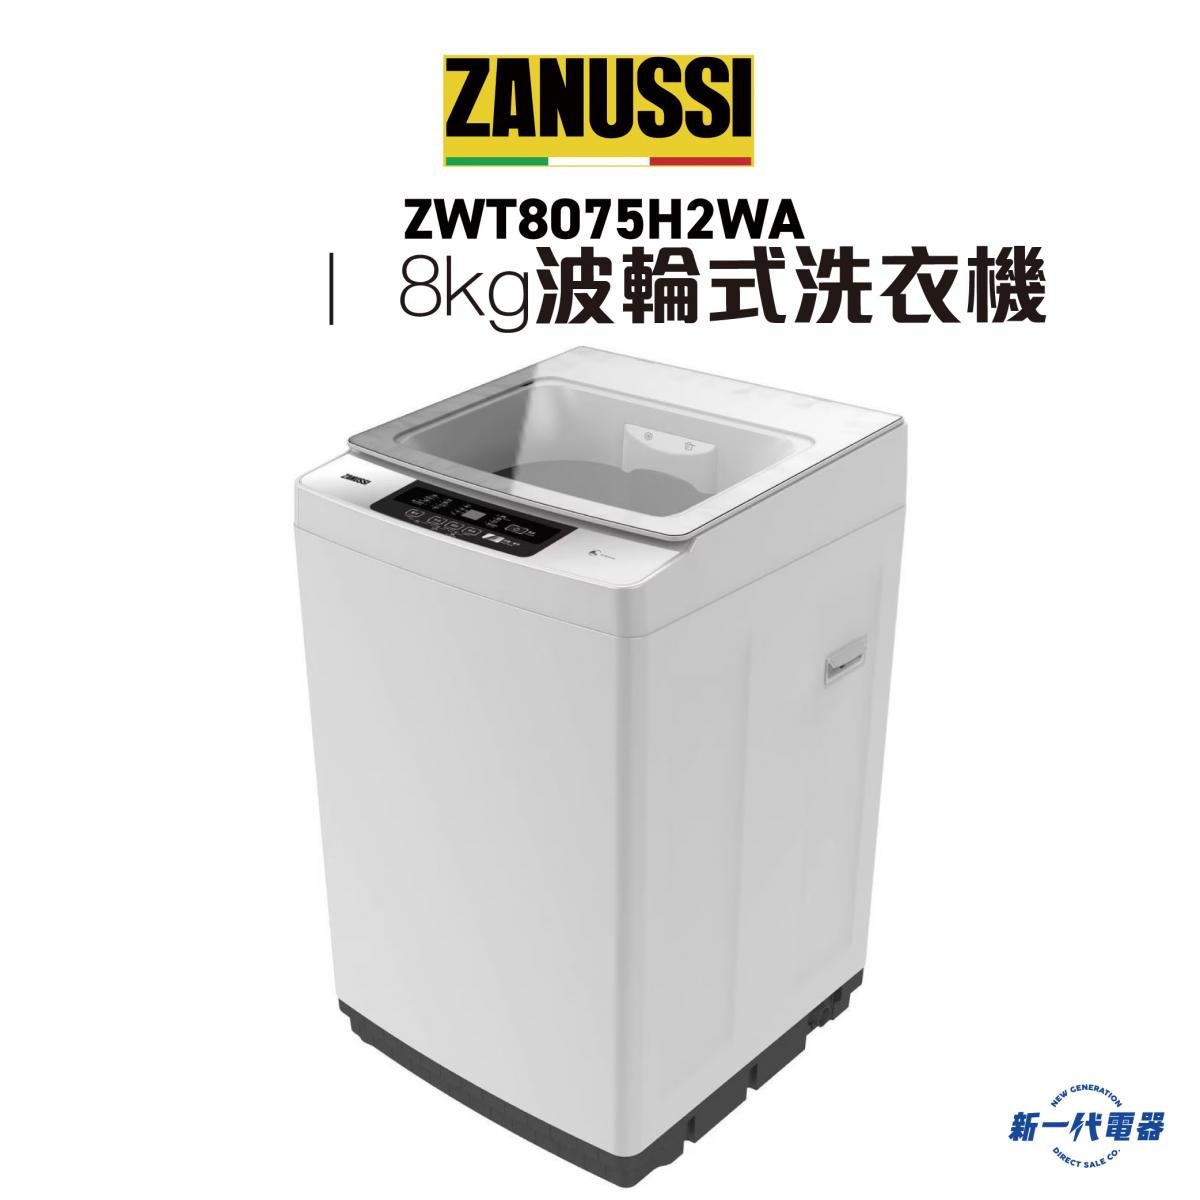 金章牌| ZWT8075H2WA -8kg 波輪式洗衣機| HKTVmall 香港最大網購平台